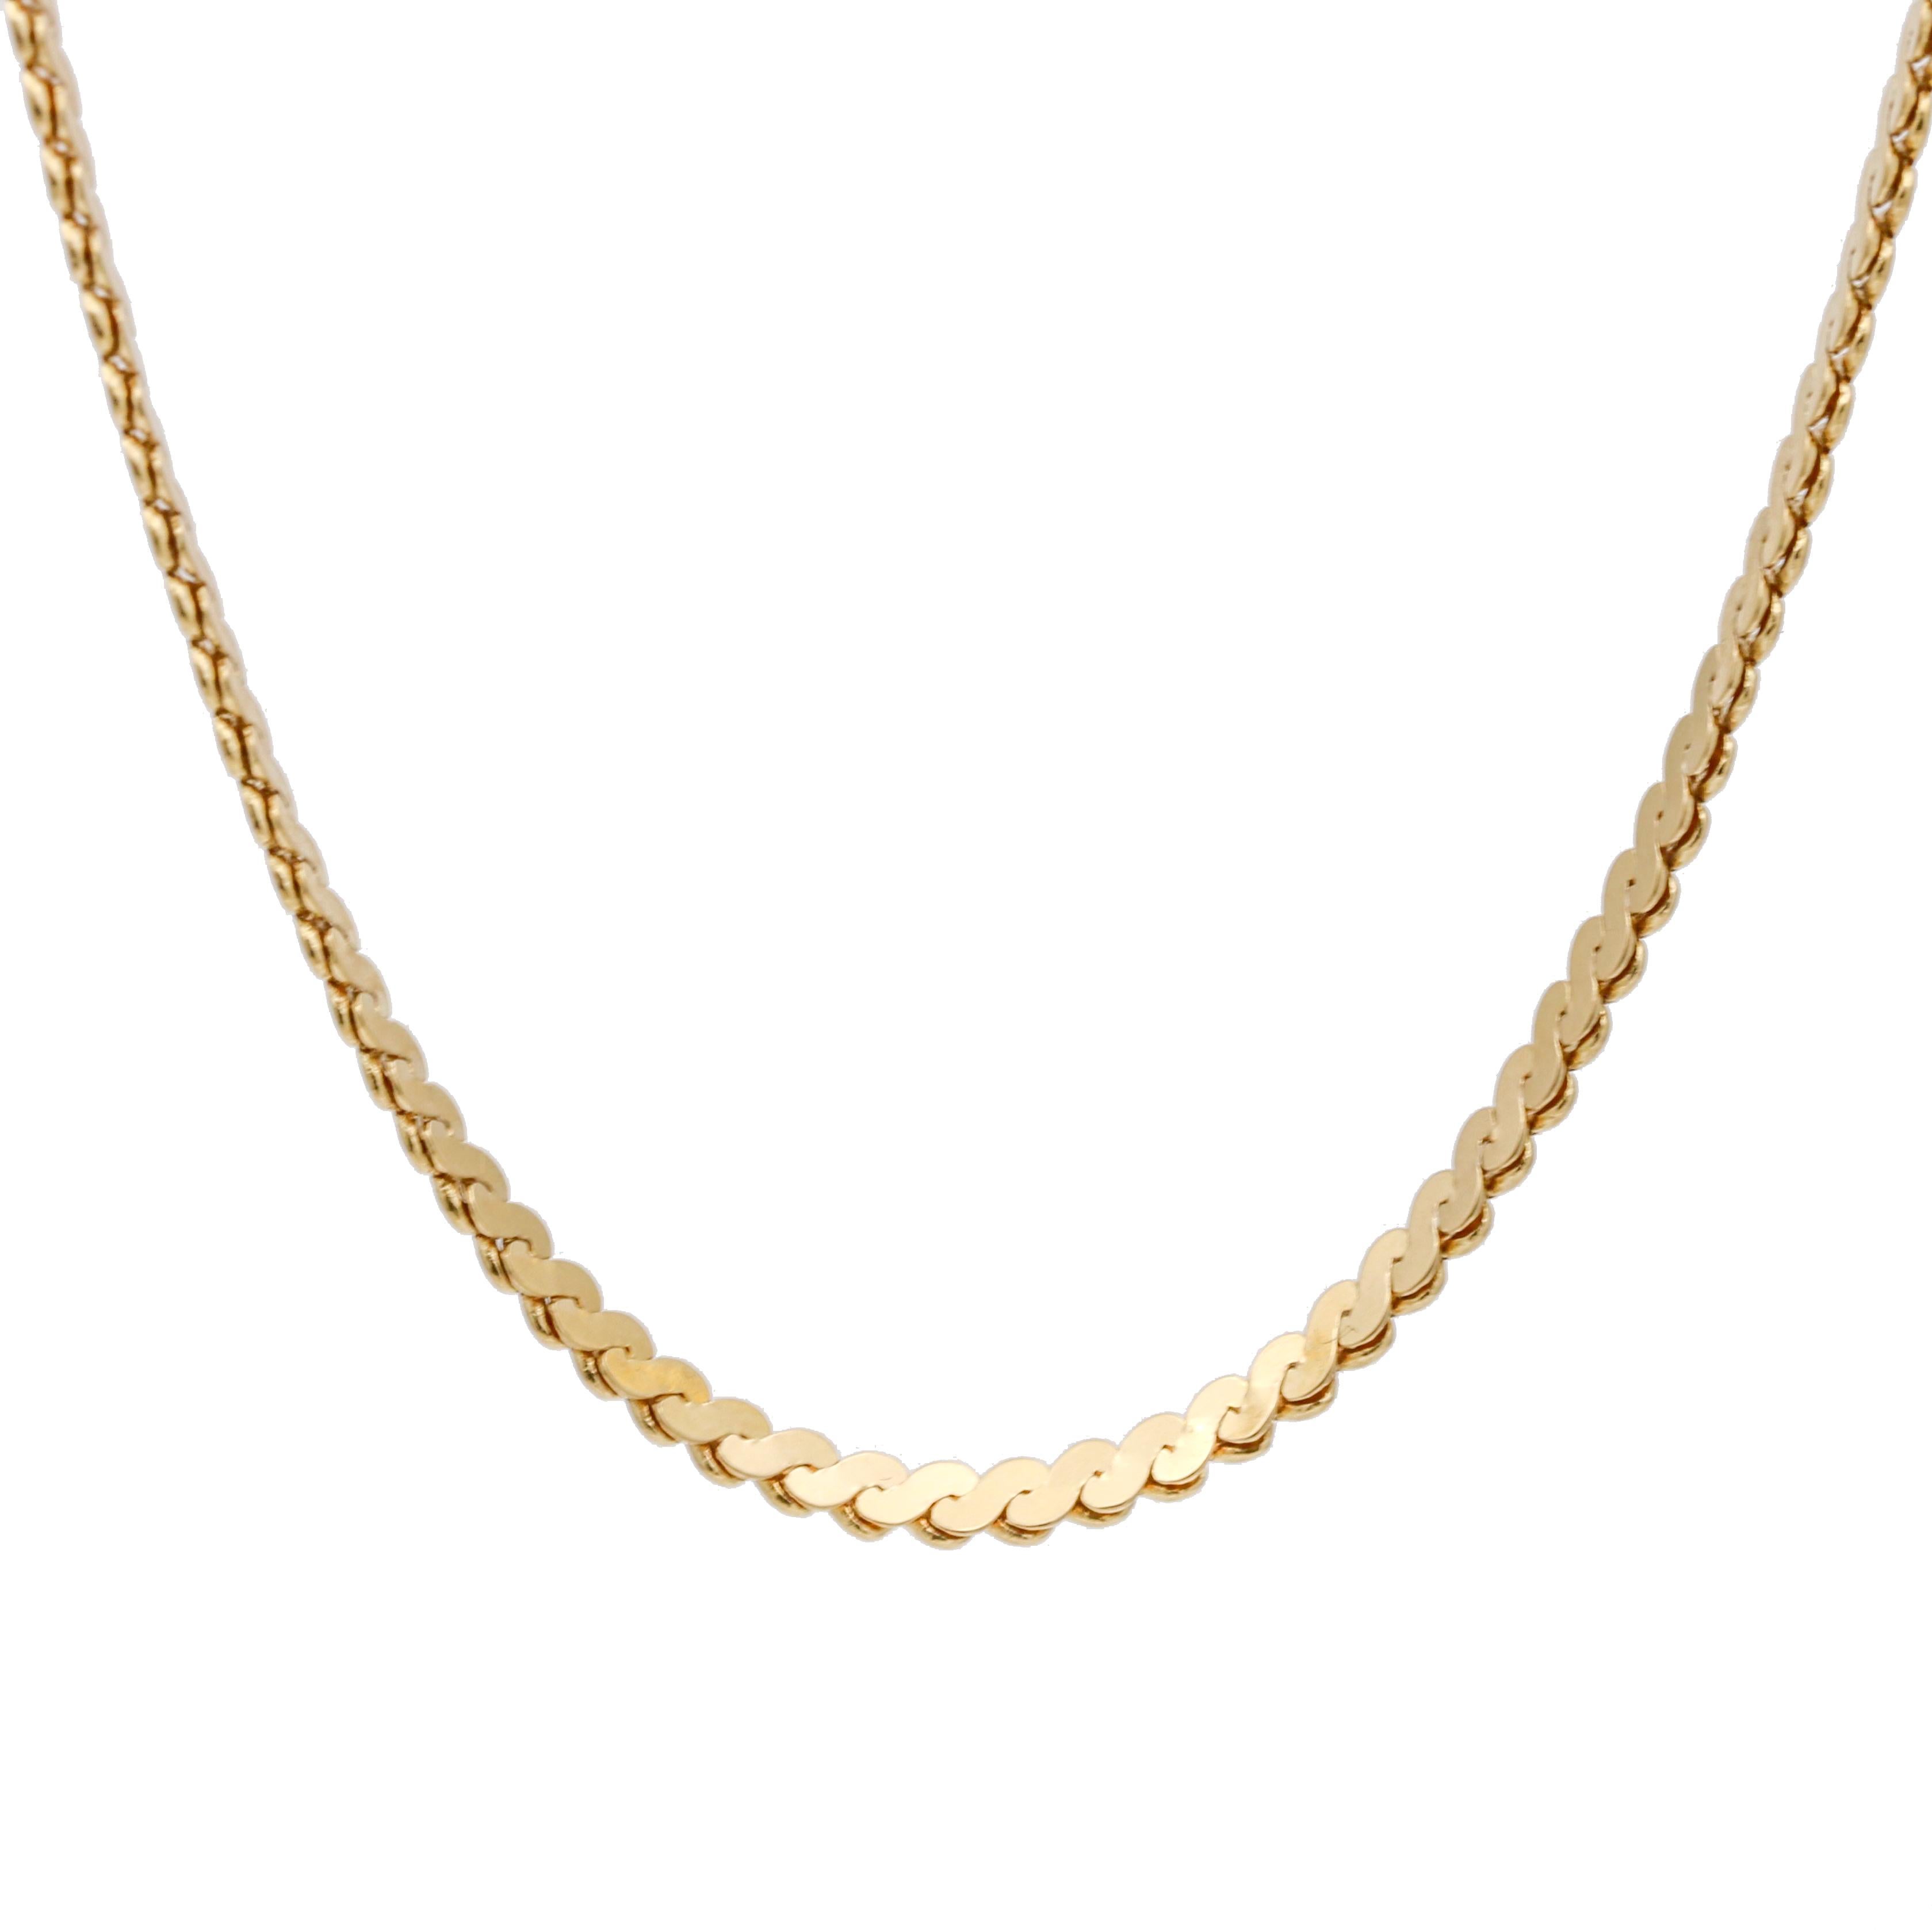 Ce collier est en or jaune 18 carats et présente un design classique de chaîne à maillons serpent. La chaîne mesure 2,5 mm de large et pèse 11,80 grammes, ce qui en fait une pièce substantielle qui n'est ni trop lourde ni trop délicate. Le collier